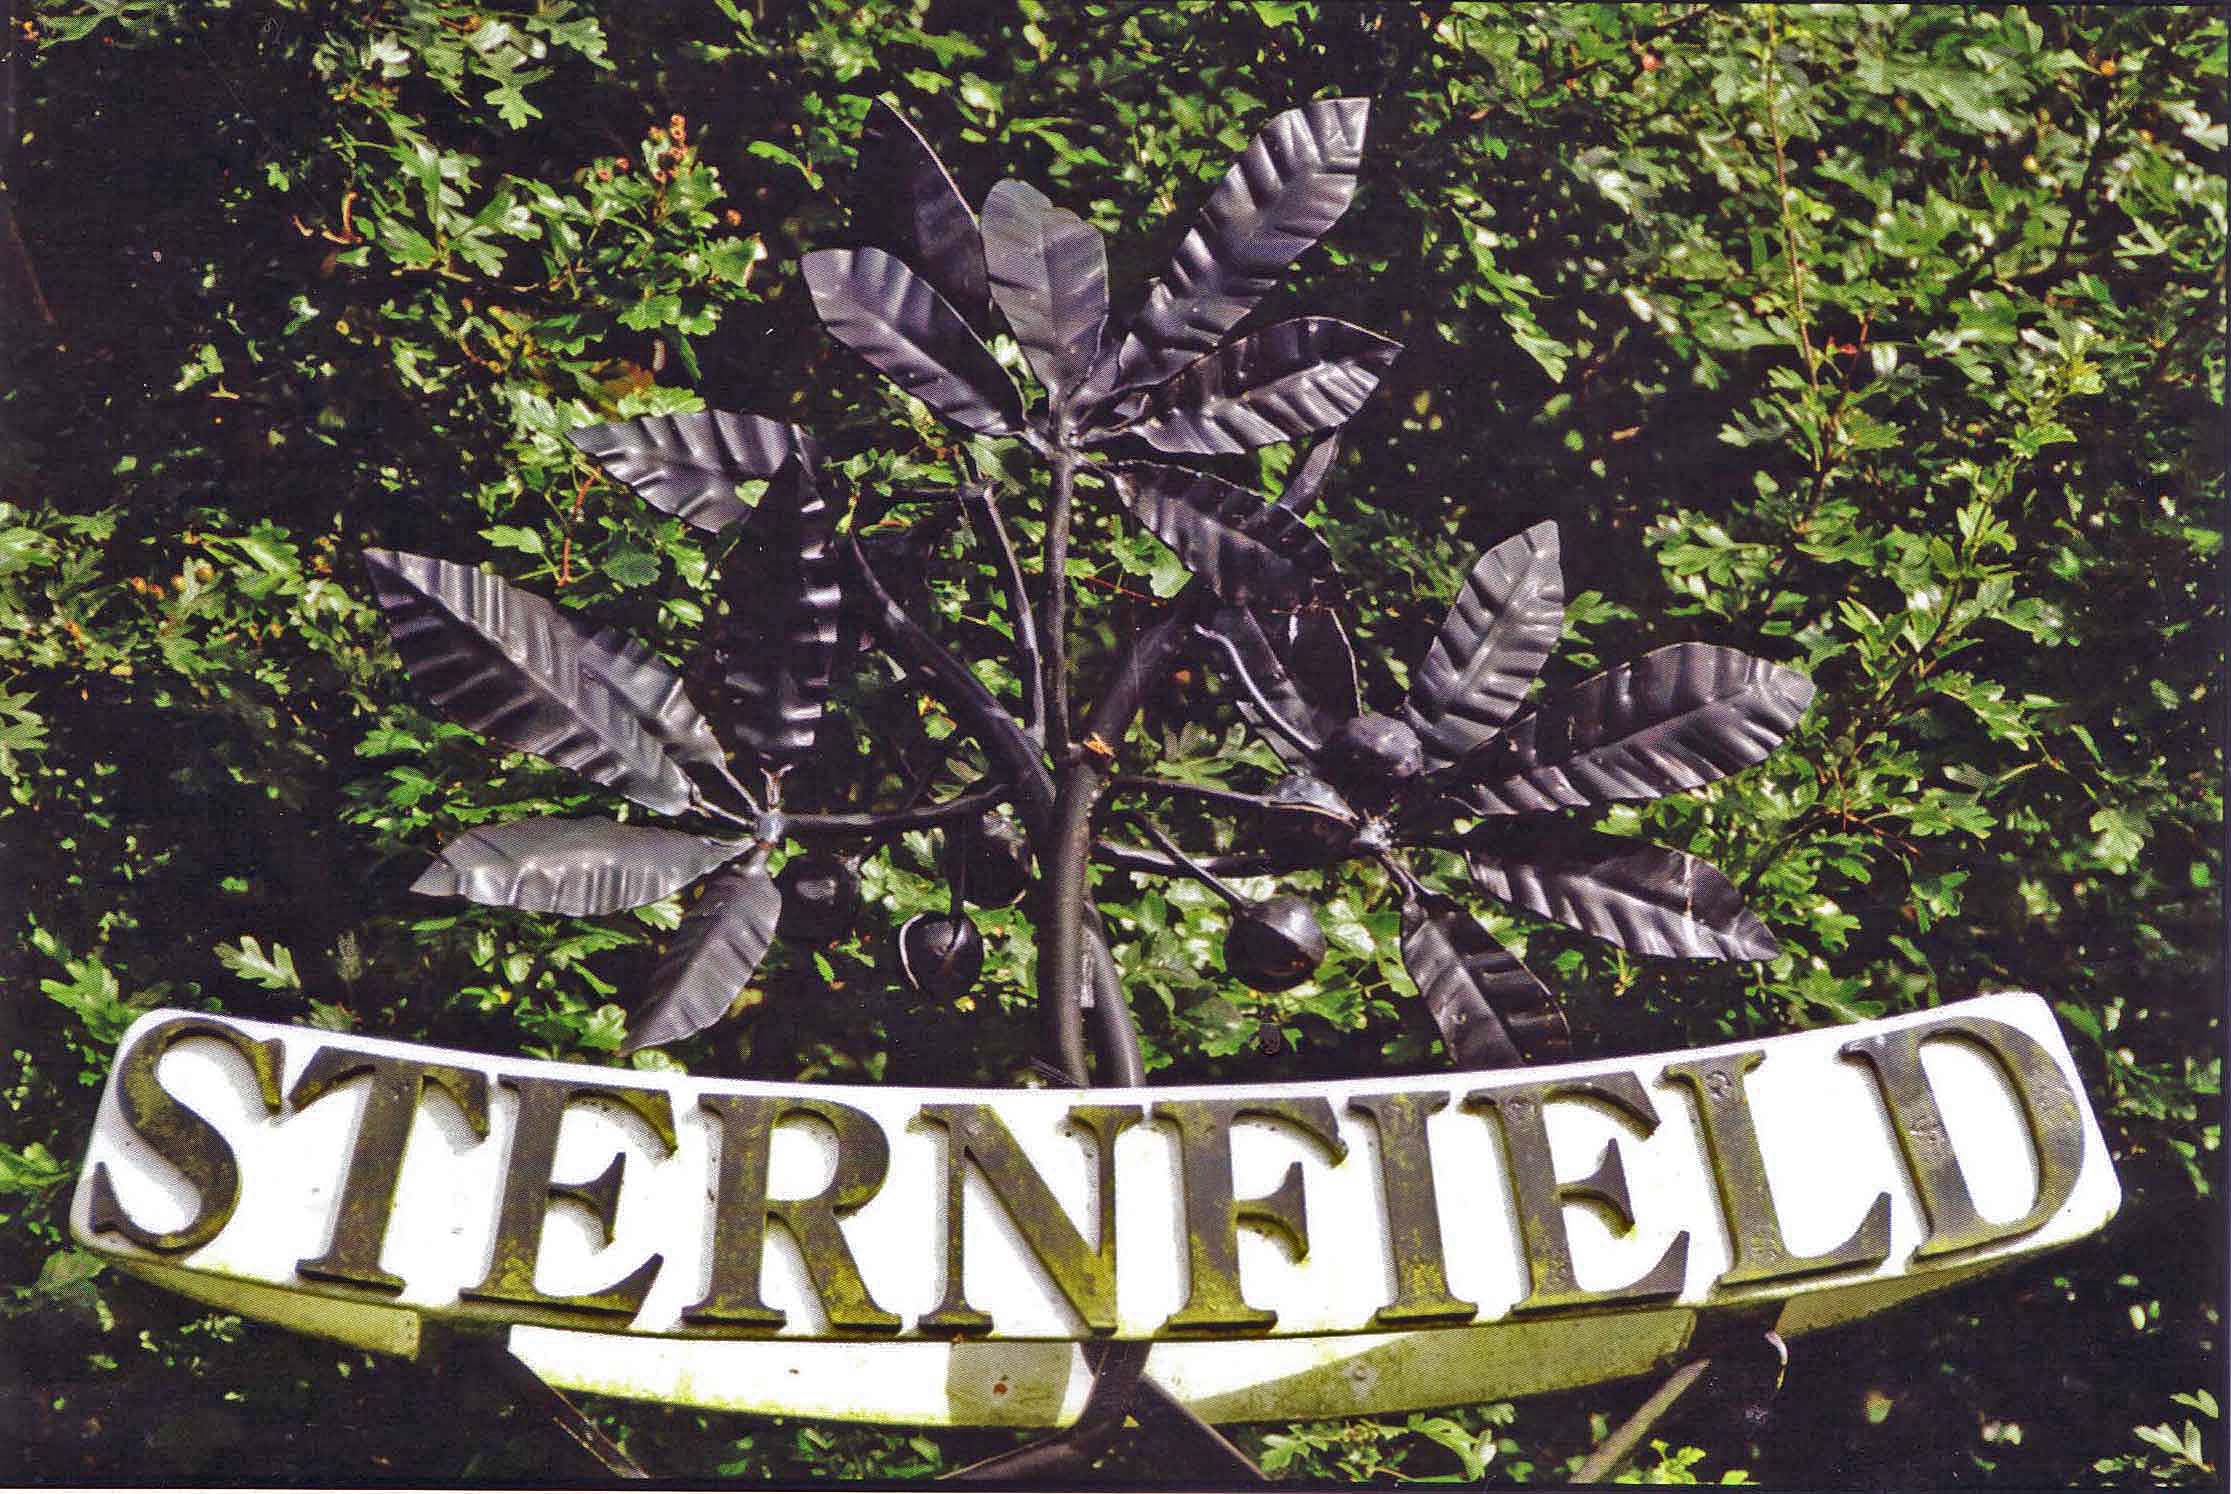 Sternfield village sign